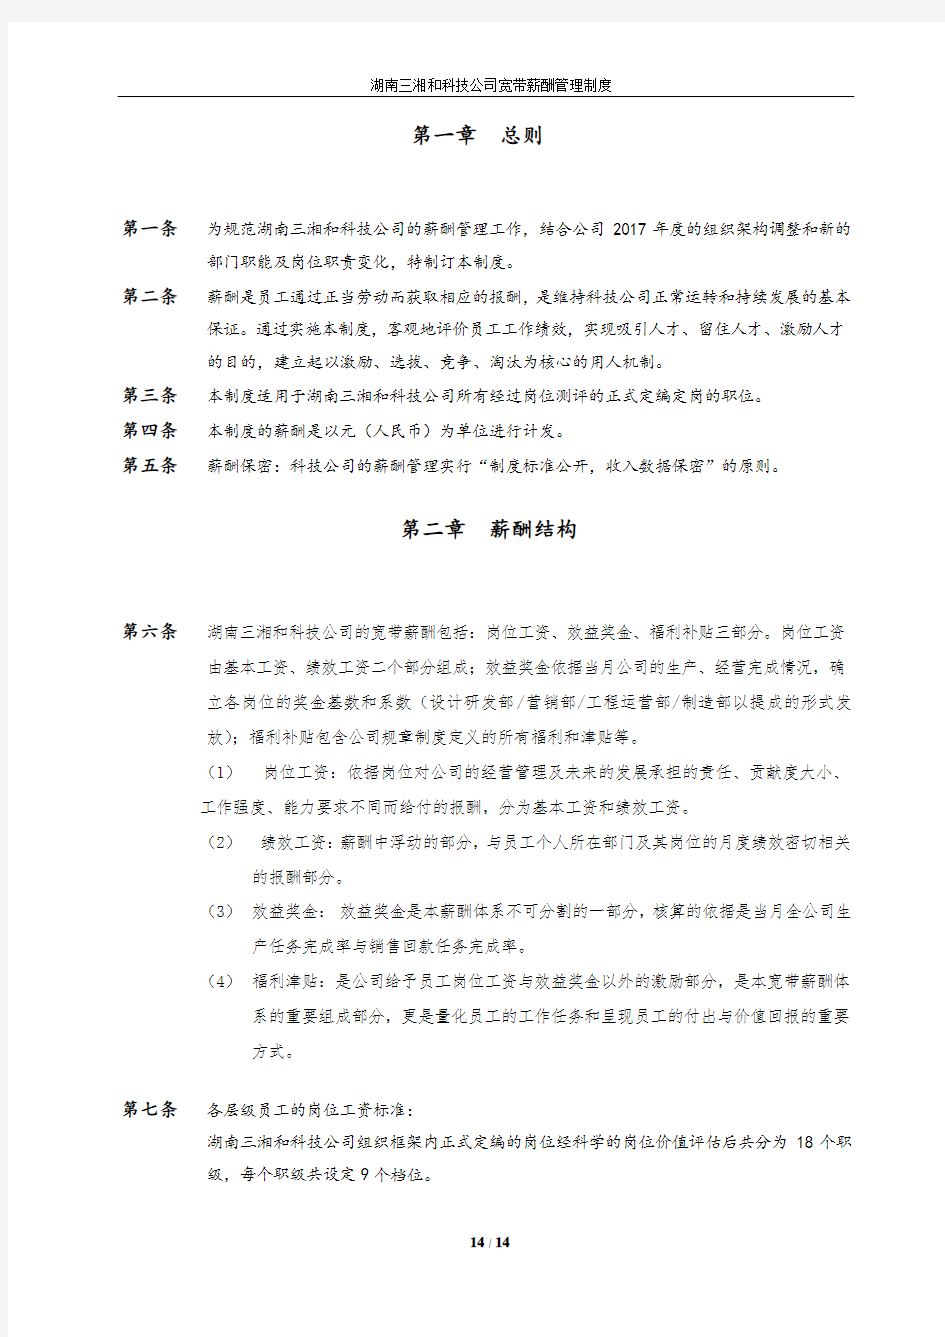 湖南三湘和科技公司薪酬管理制度(四)